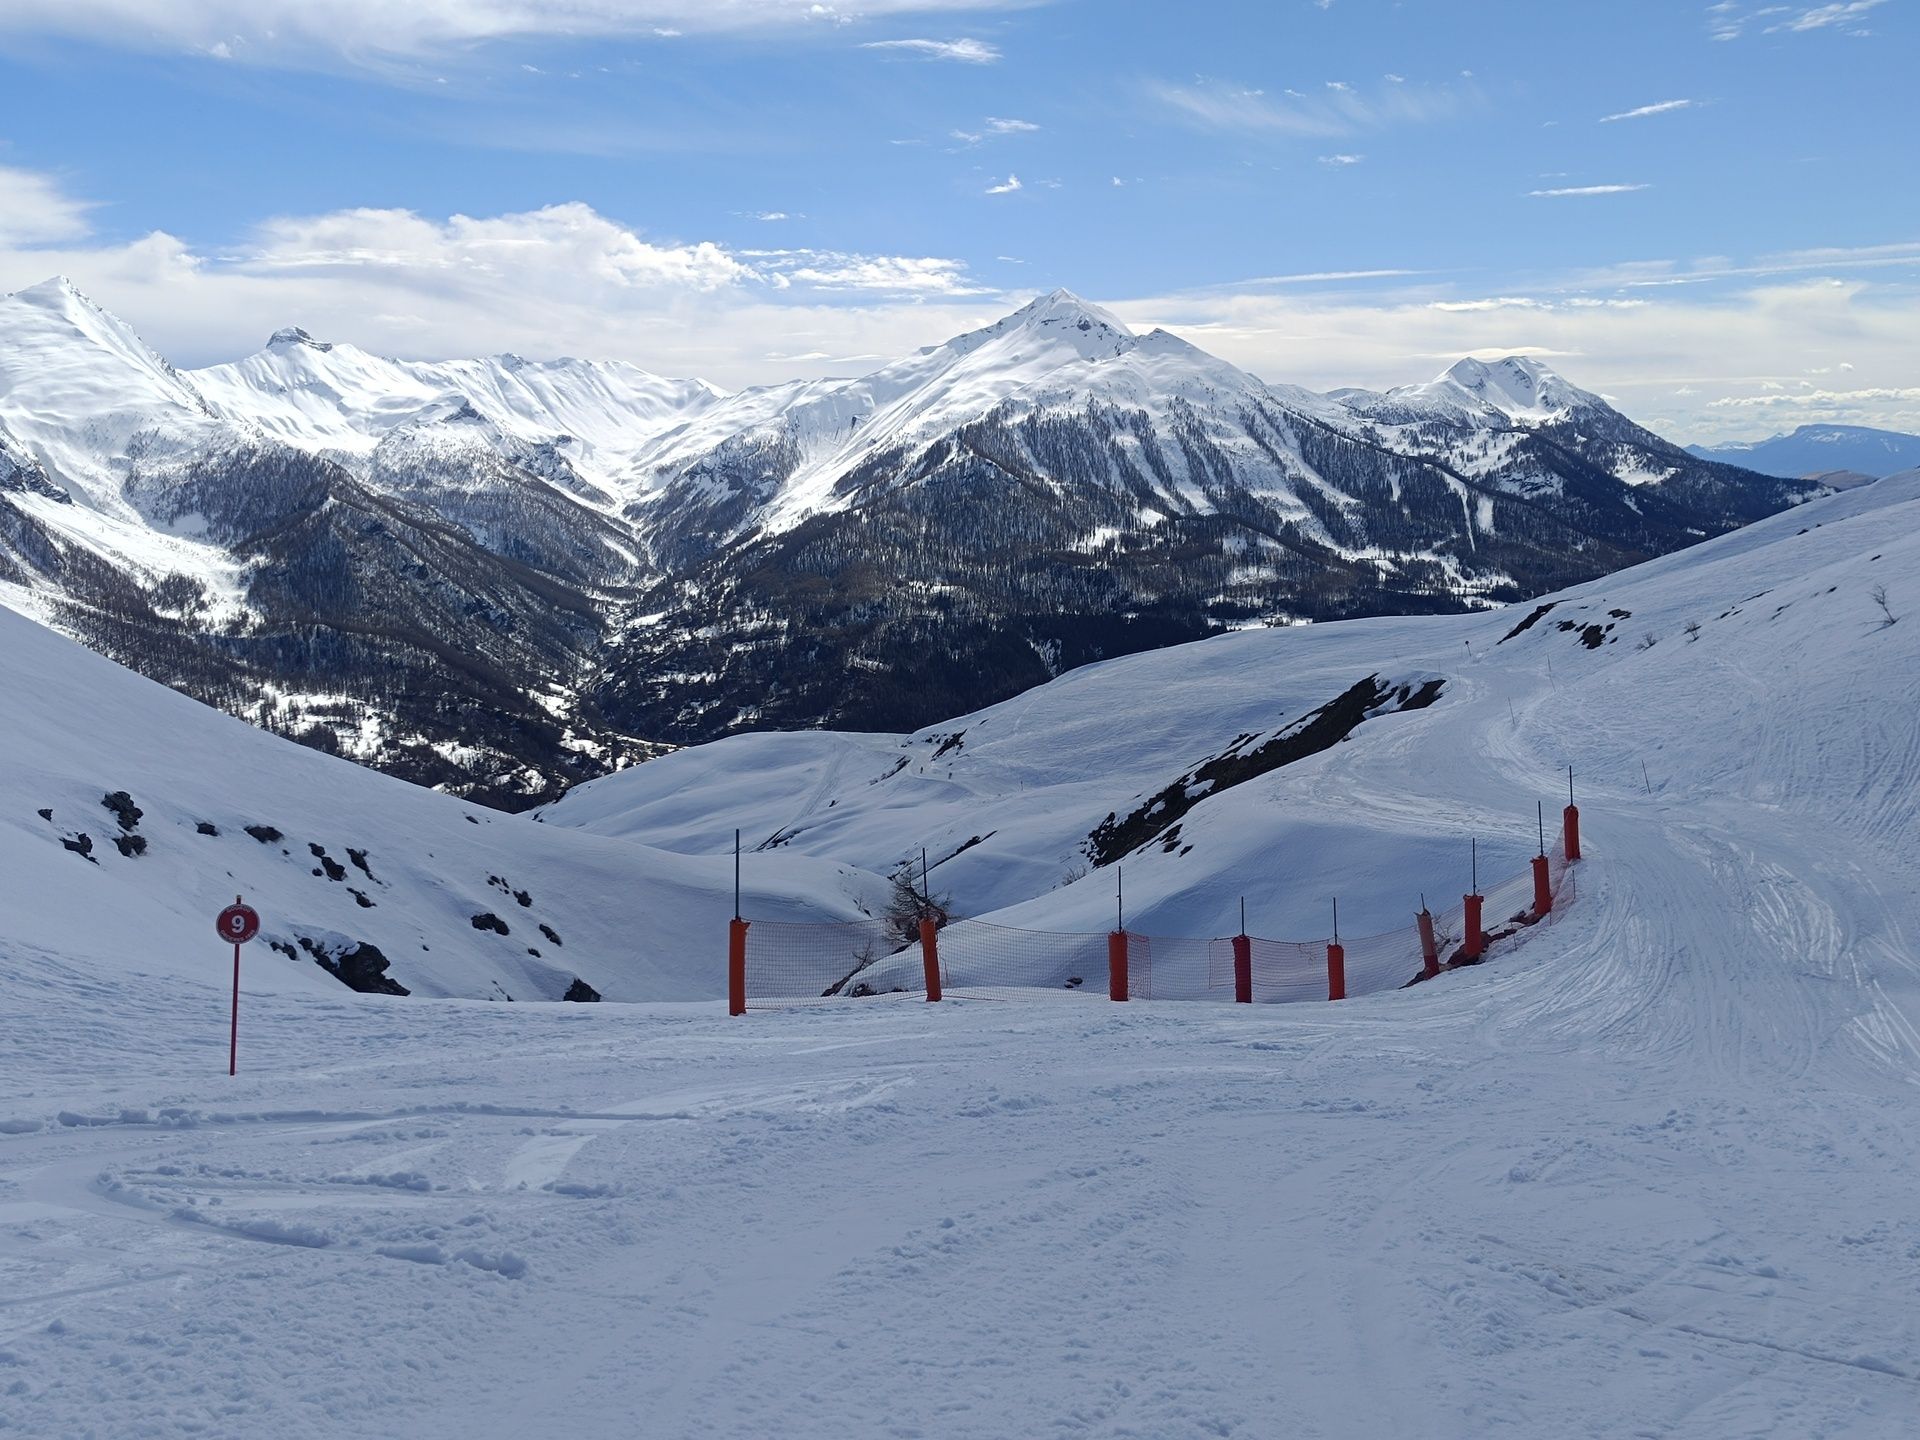 Grandioso día de esquí con pistas muy variadas, nos gustó mucho la estación